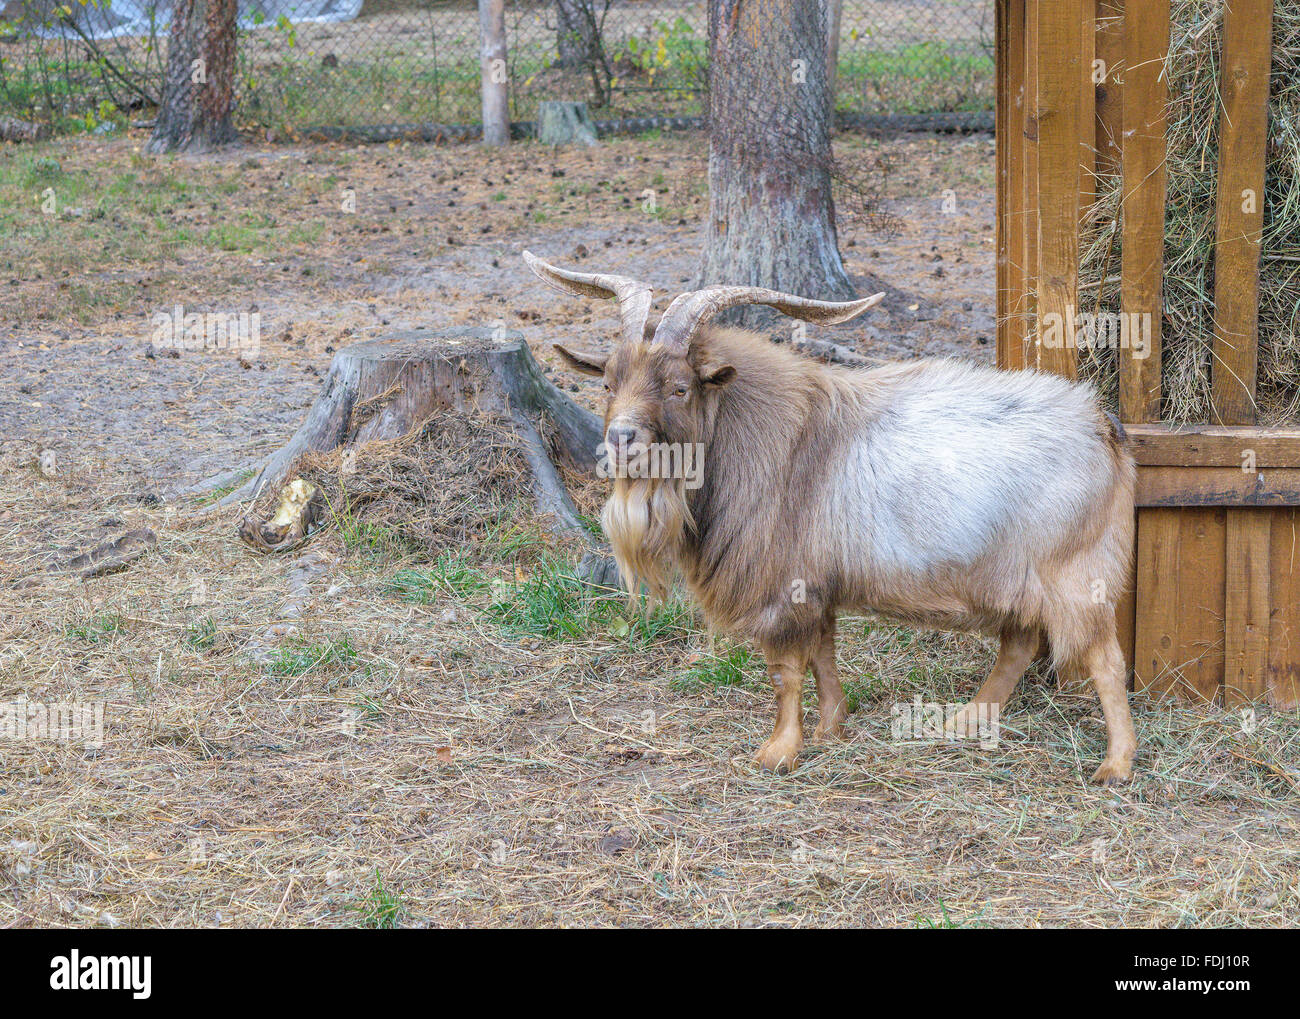 Shaggy horned mountain sheep (ovis ammon) près de l'engraissement au foin (vue latérale) Banque D'Images